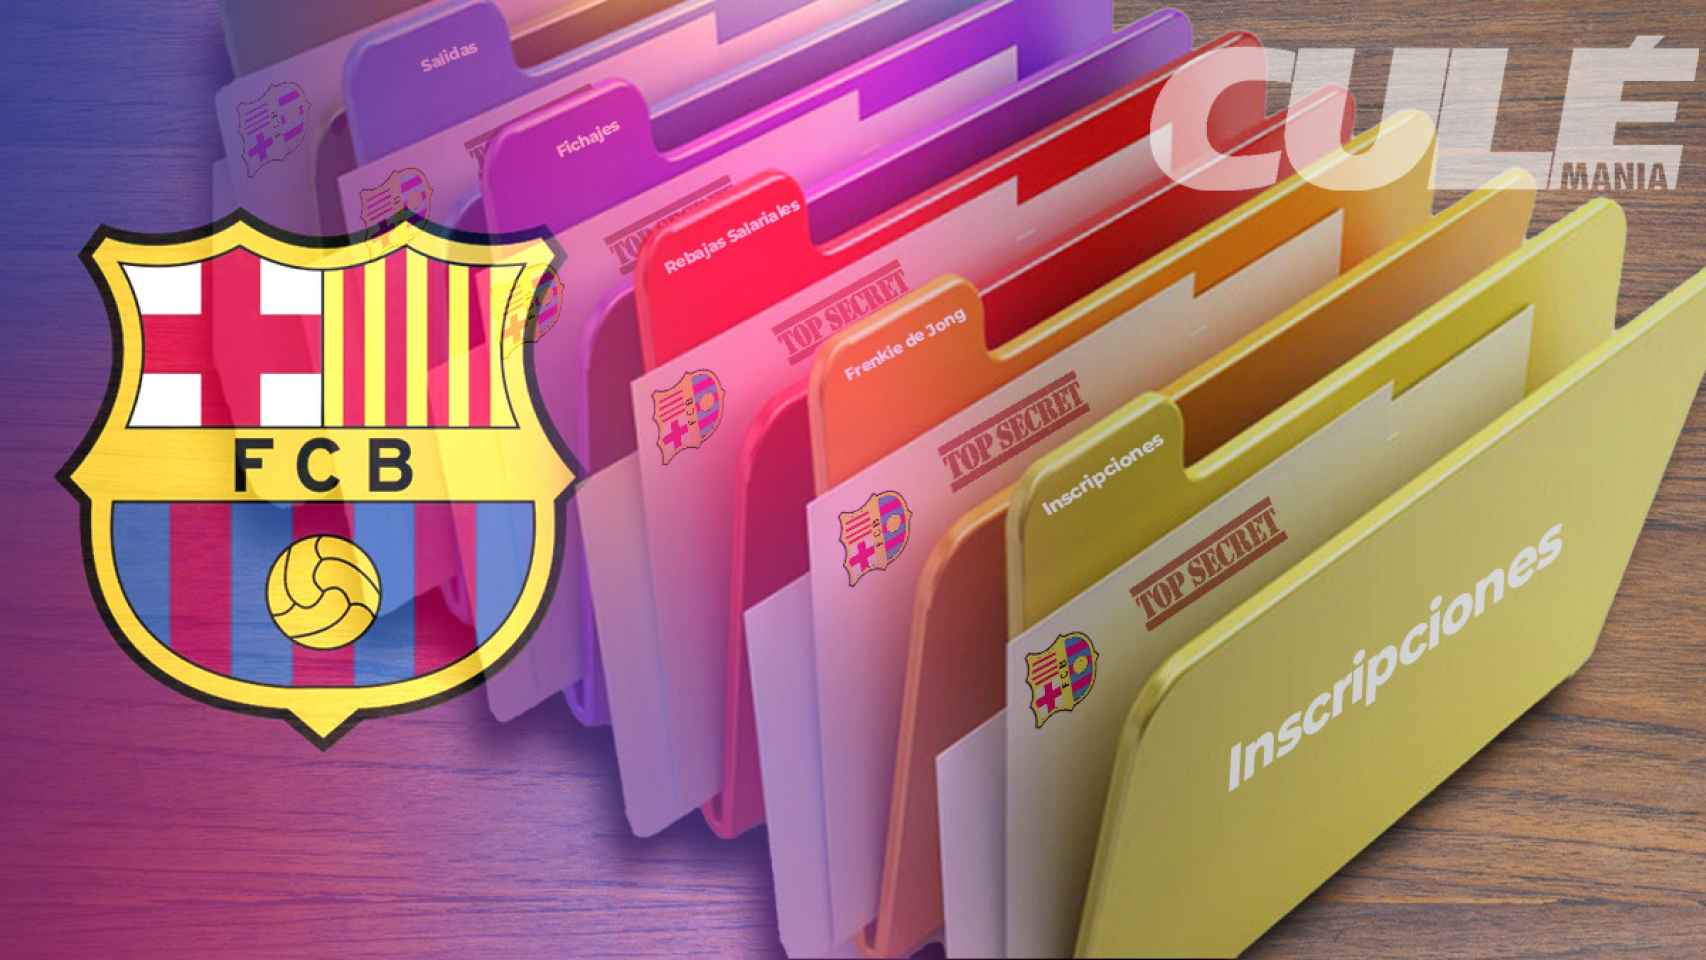 Las carpetas por resolver del FC Barcelona antes de empezar la Liga / CULEMANÍA